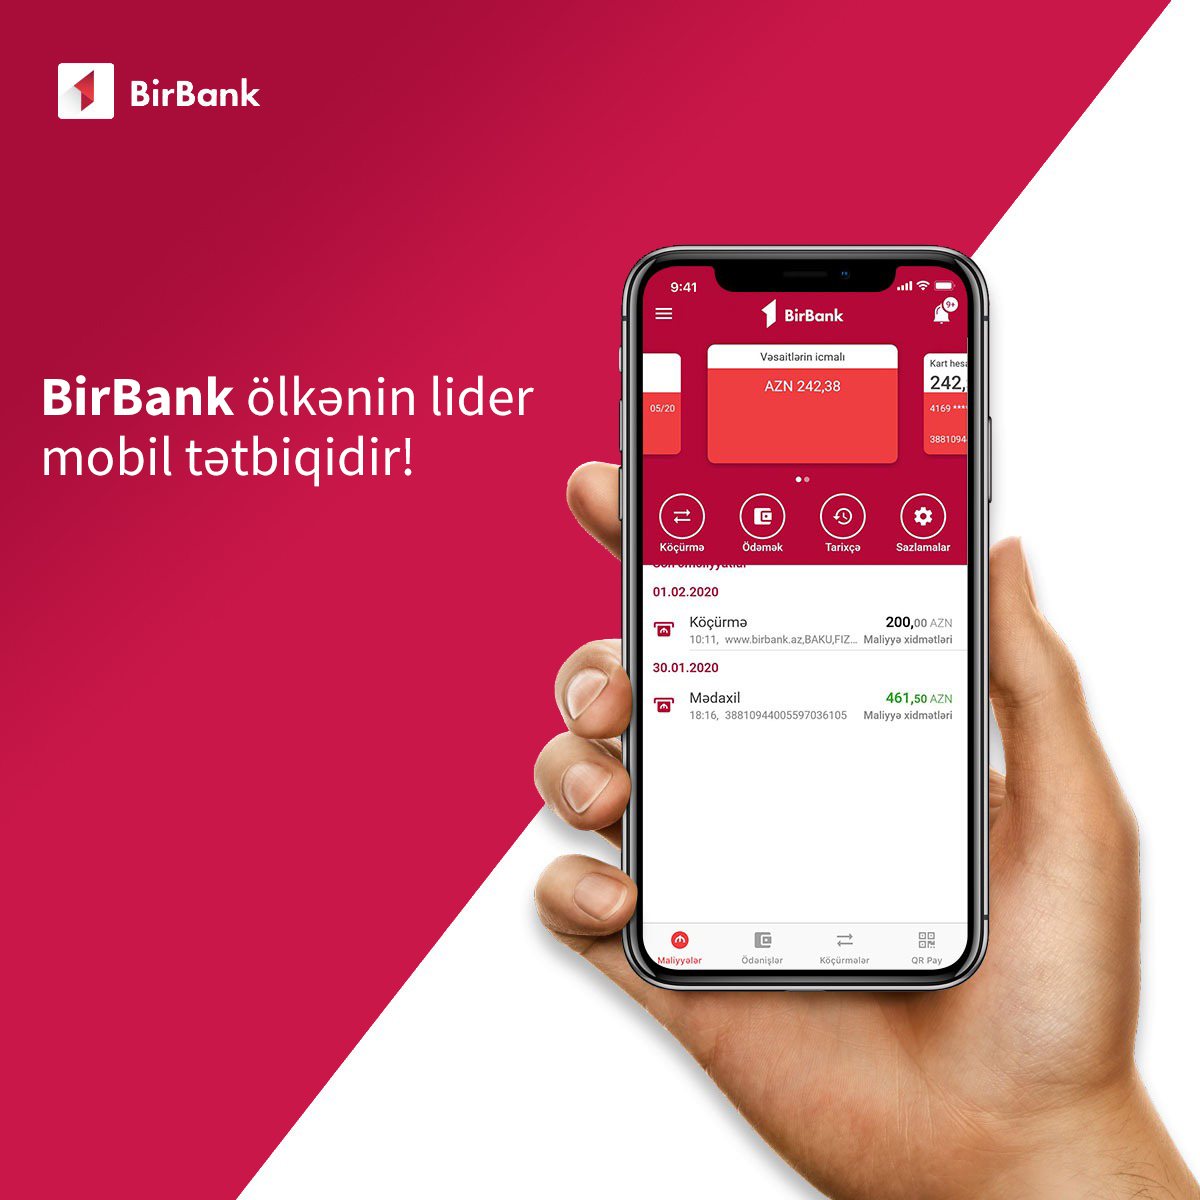 BirBank ölkənin lider mobil tətbiqidir!